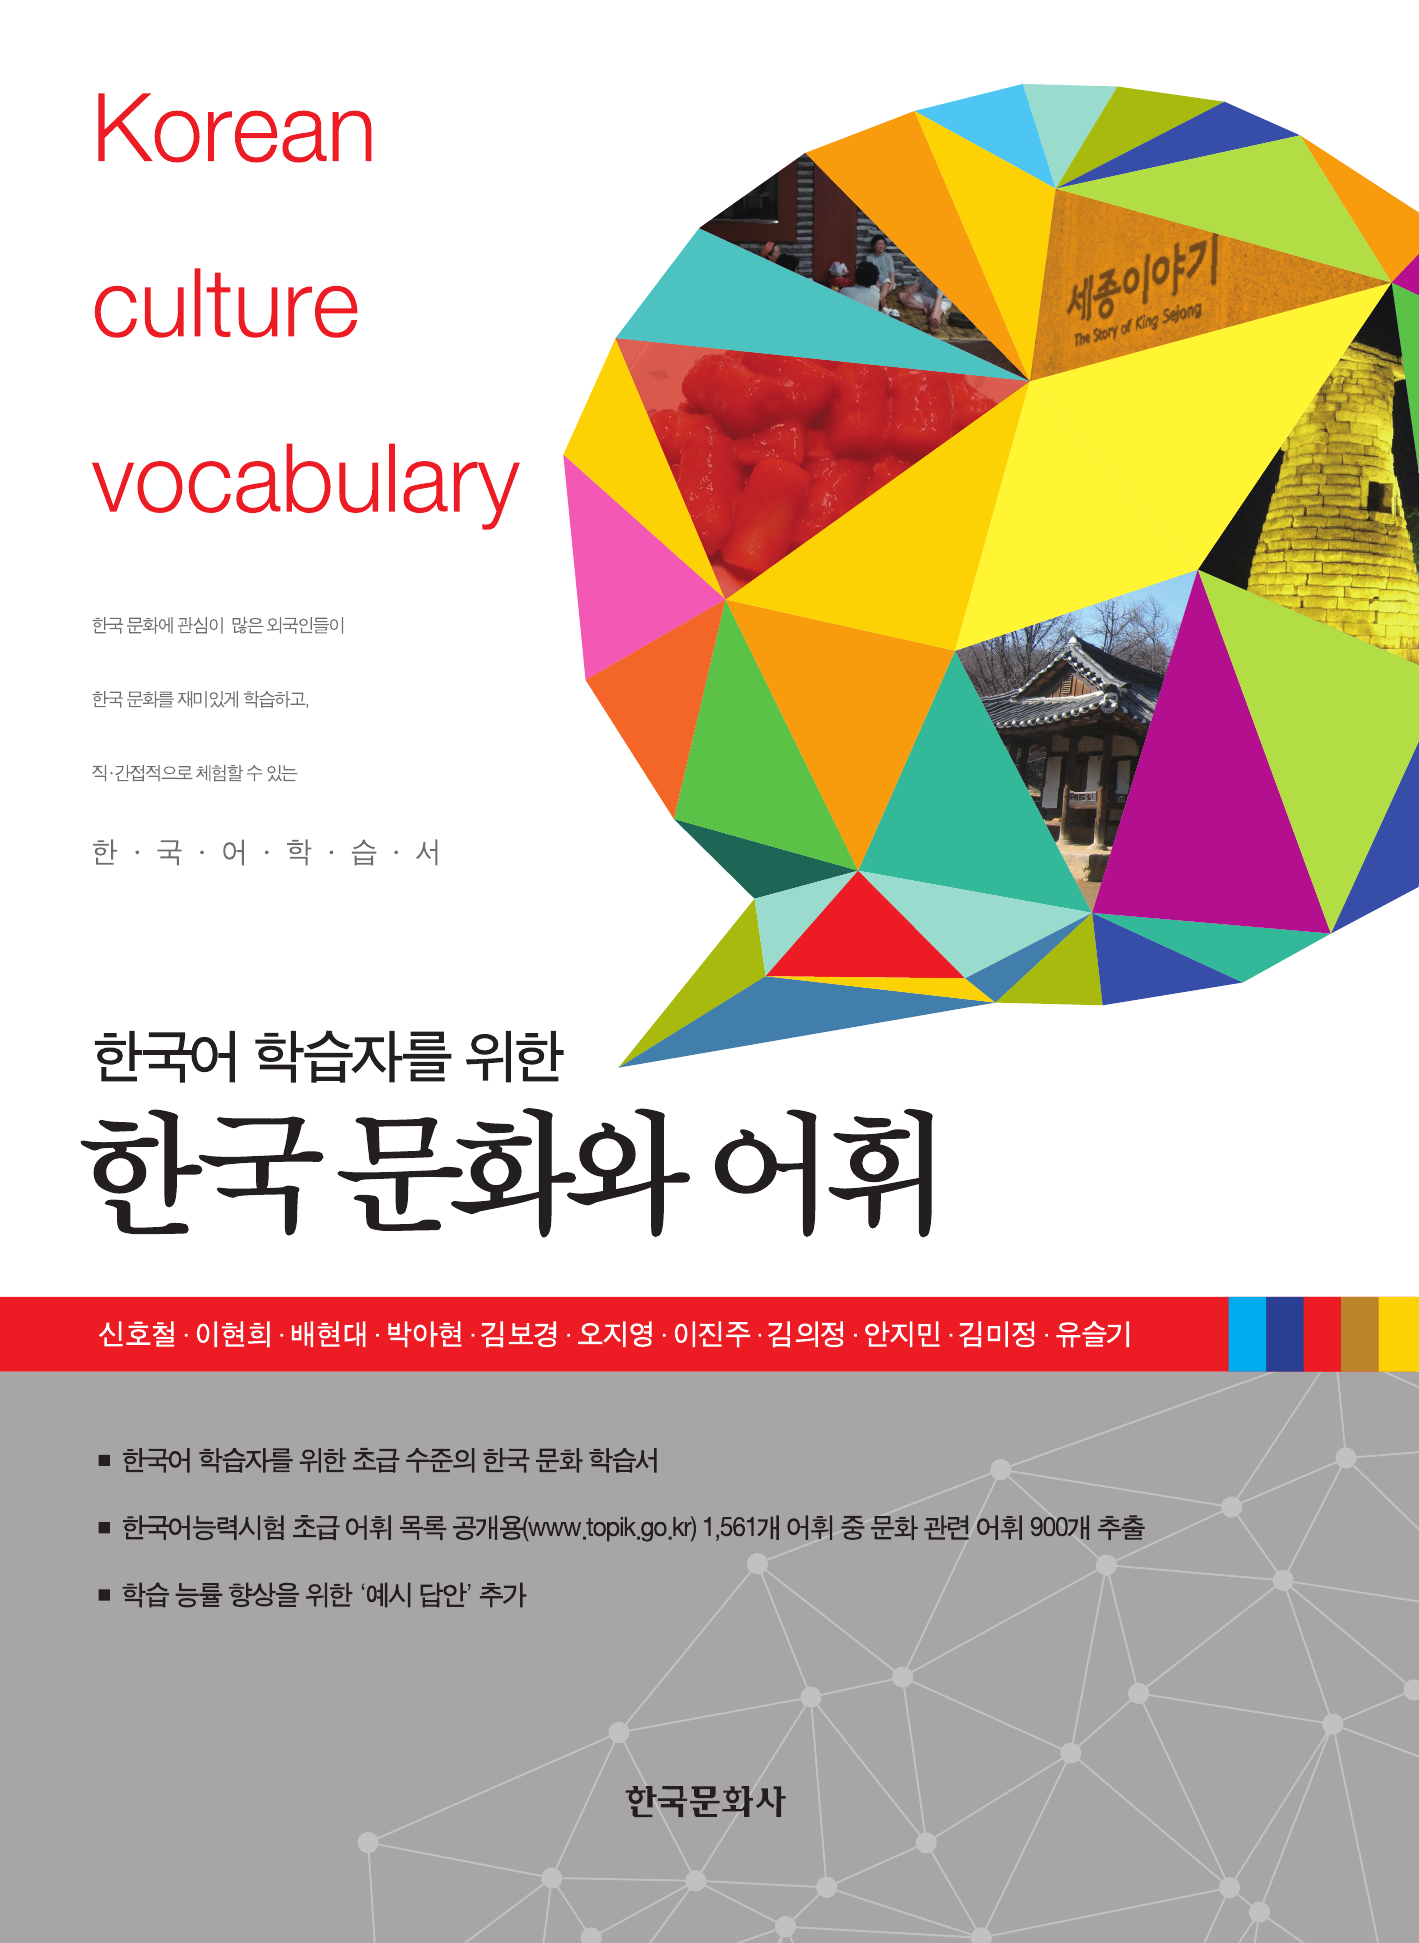 한국어 학습자를 위한 한국문화와 어휘